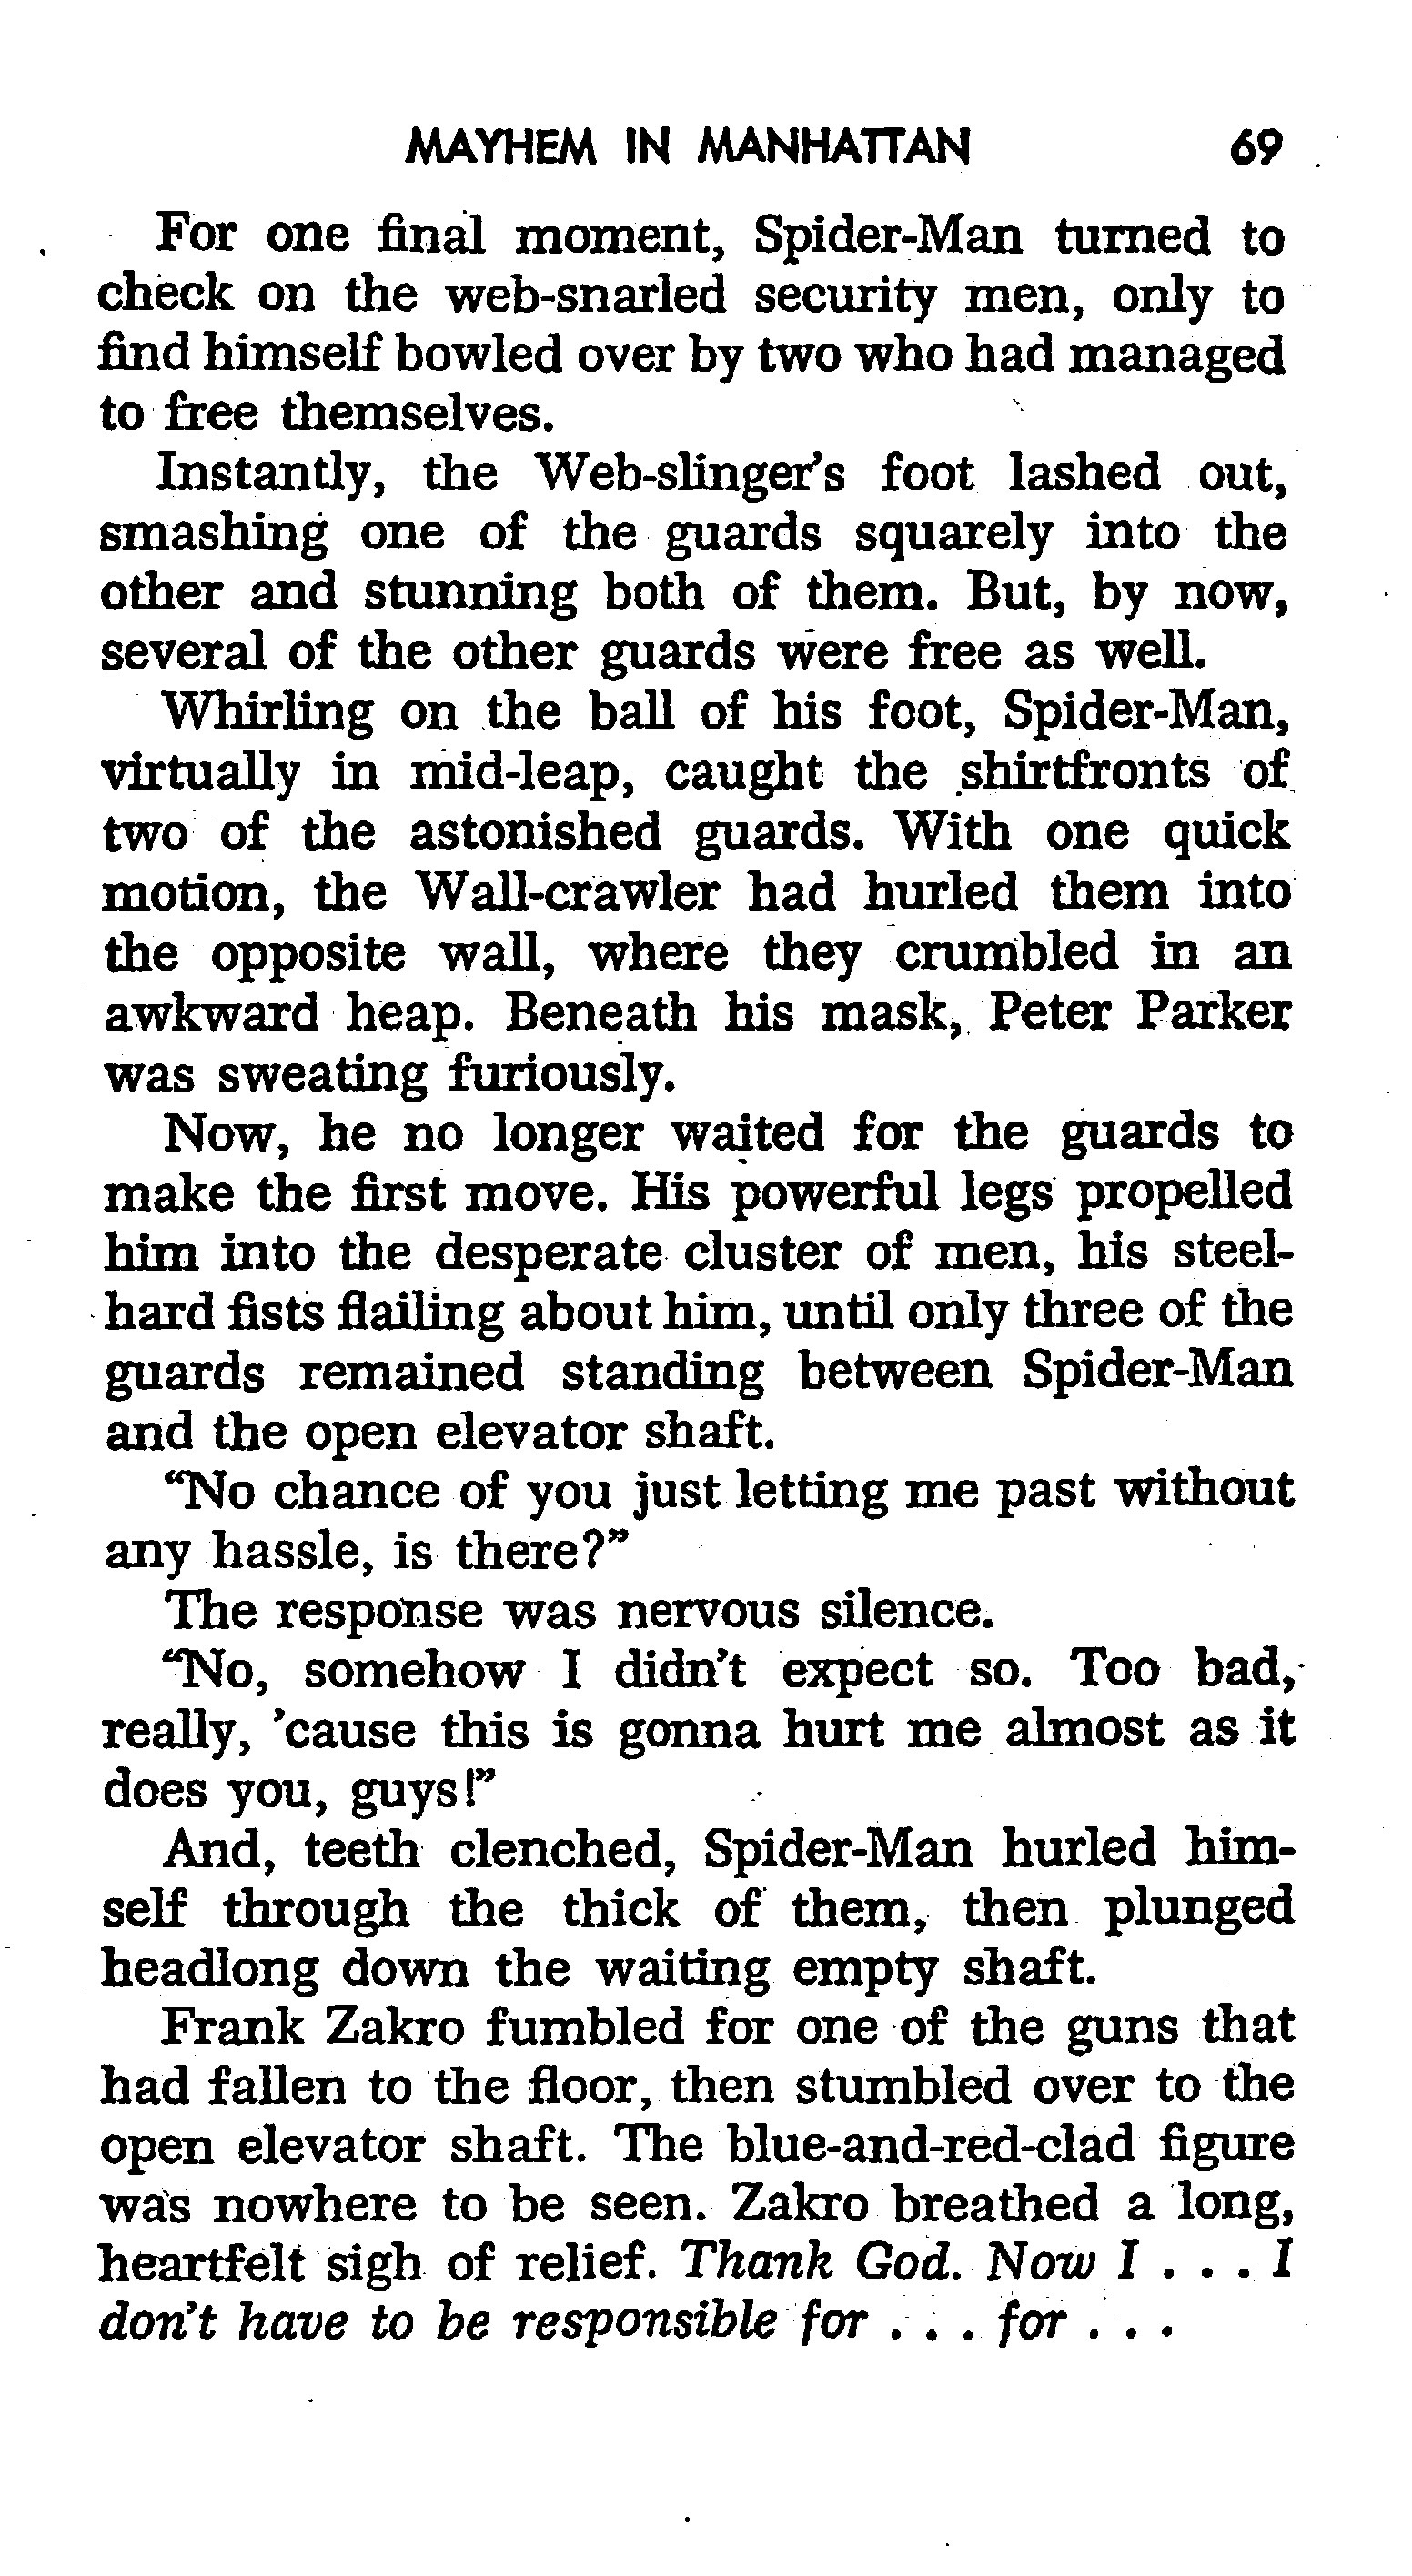 Read online The Amazing Spider-Man: Mayhem in Manhattan comic -  Issue # TPB (Part 1) - 70